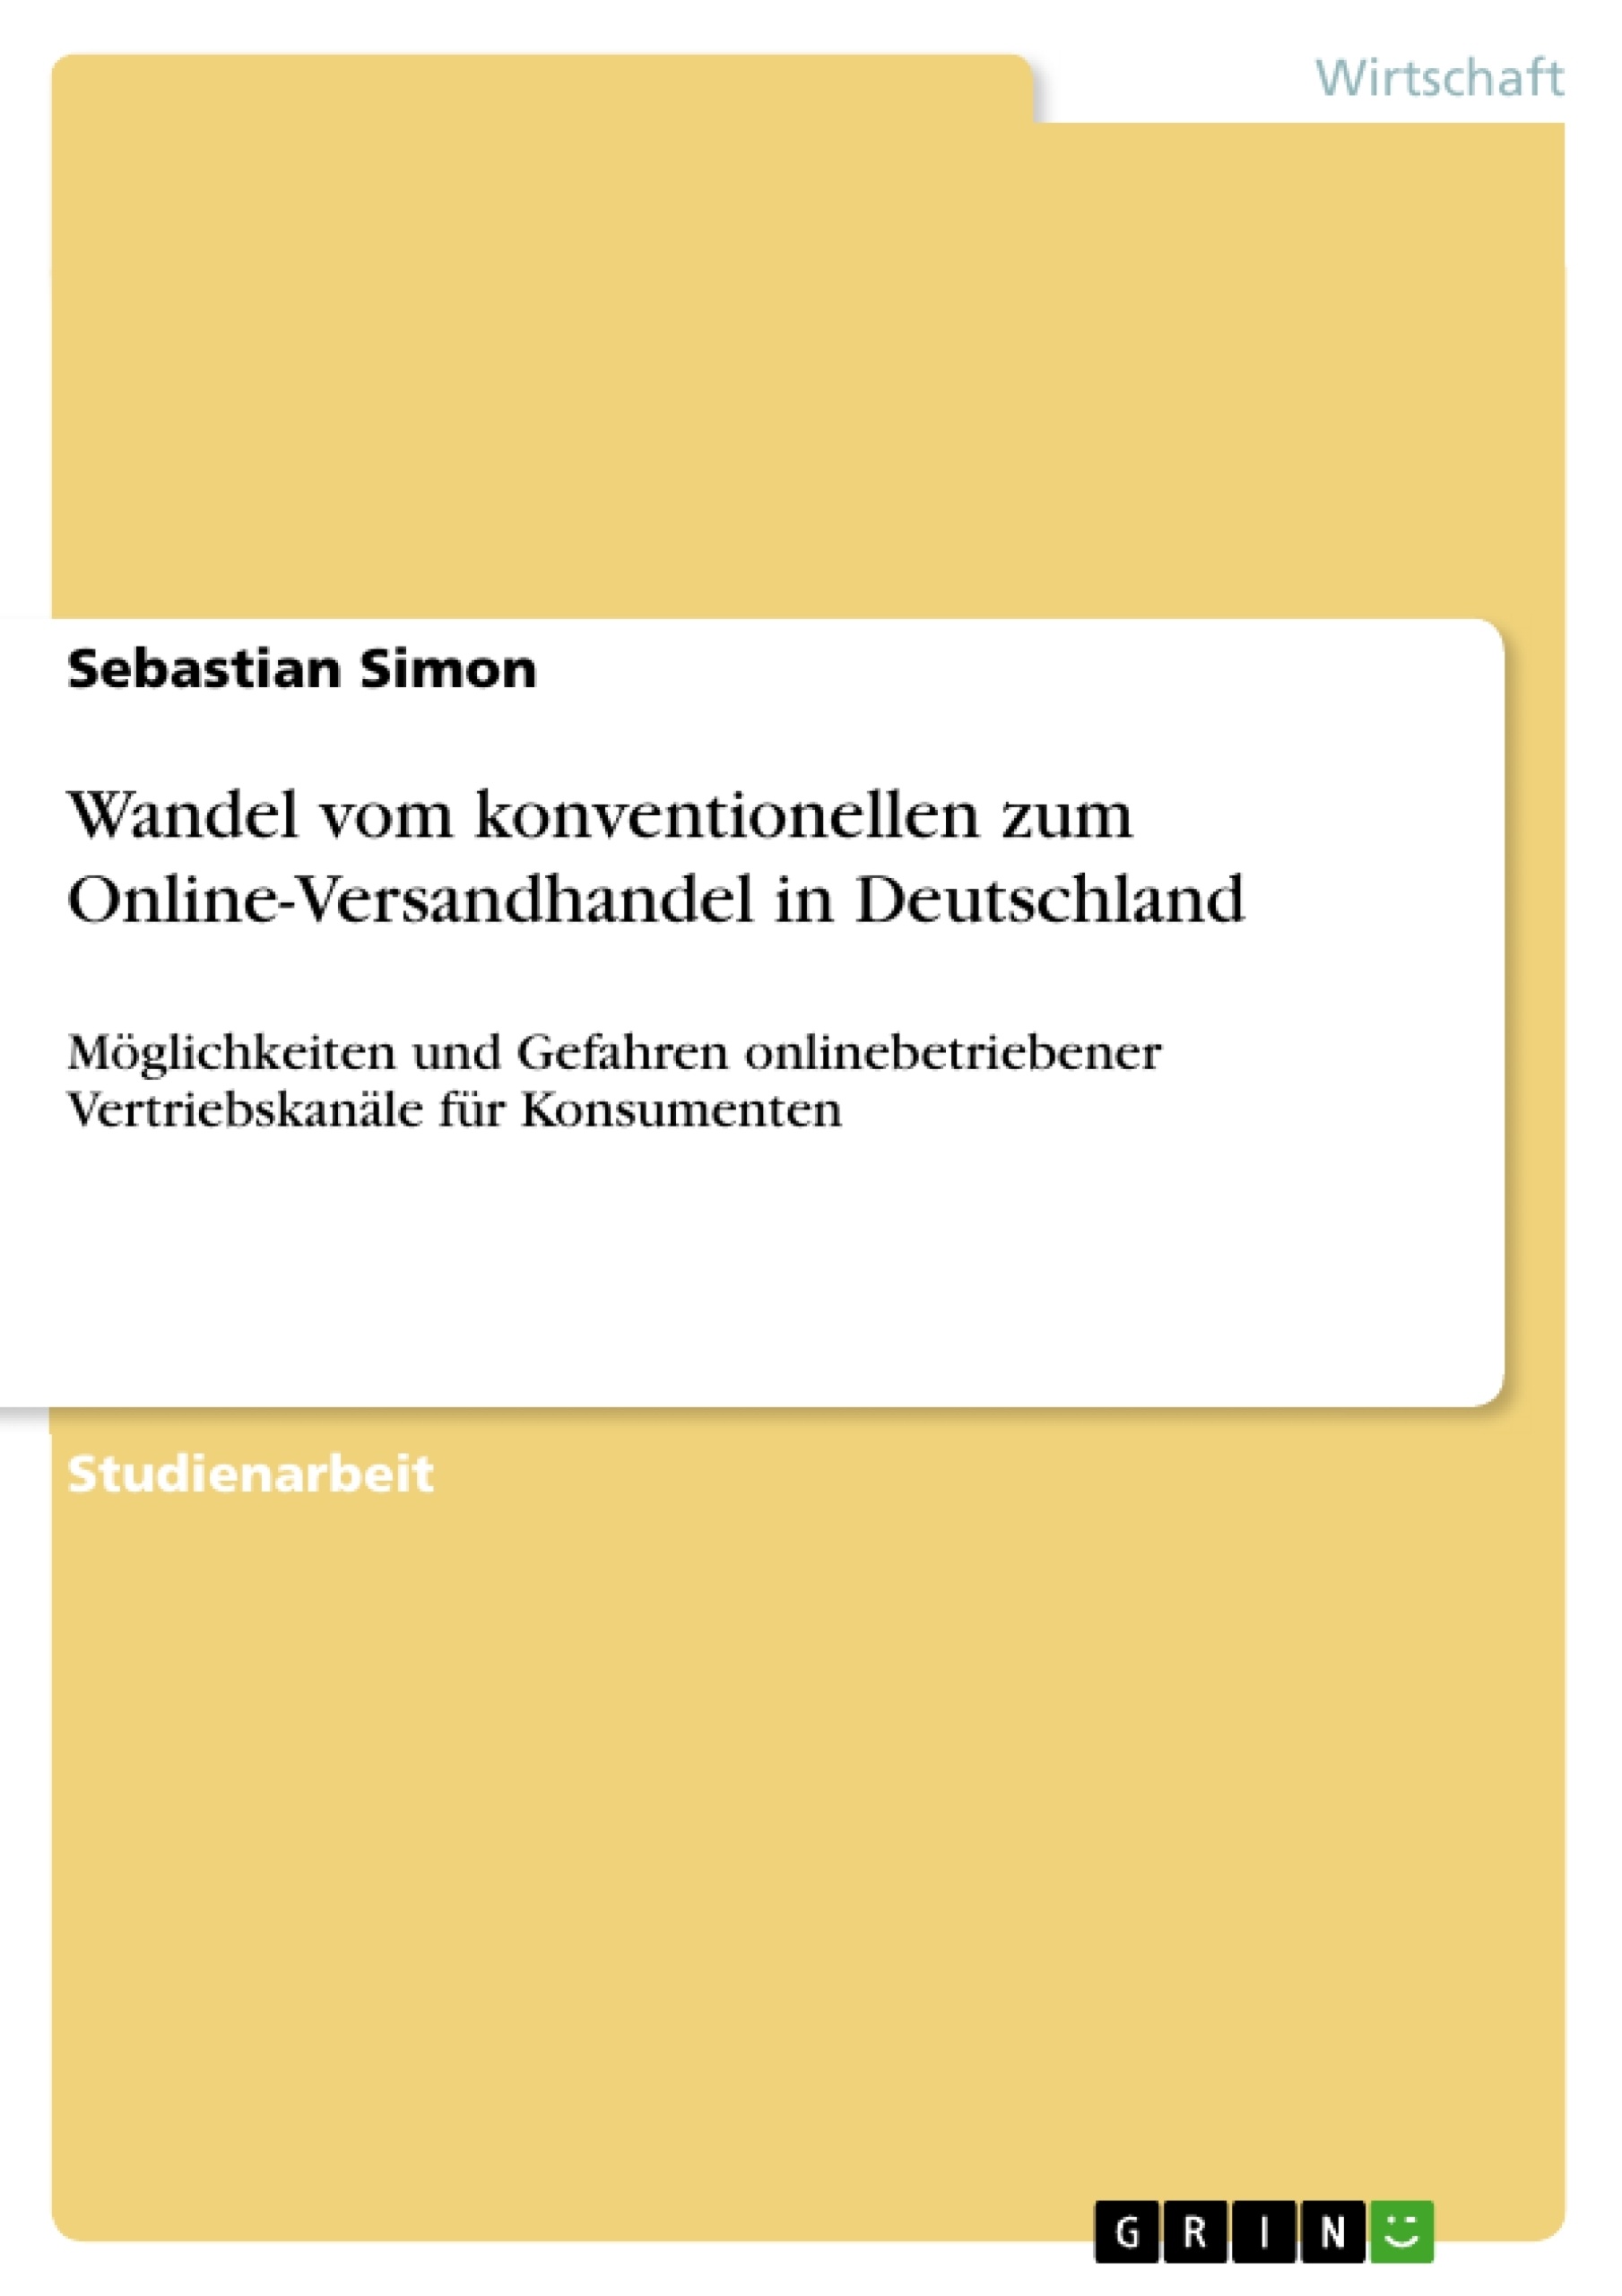 Título: Wandel vom konventionellen zum Online-Versandhandel in Deutschland